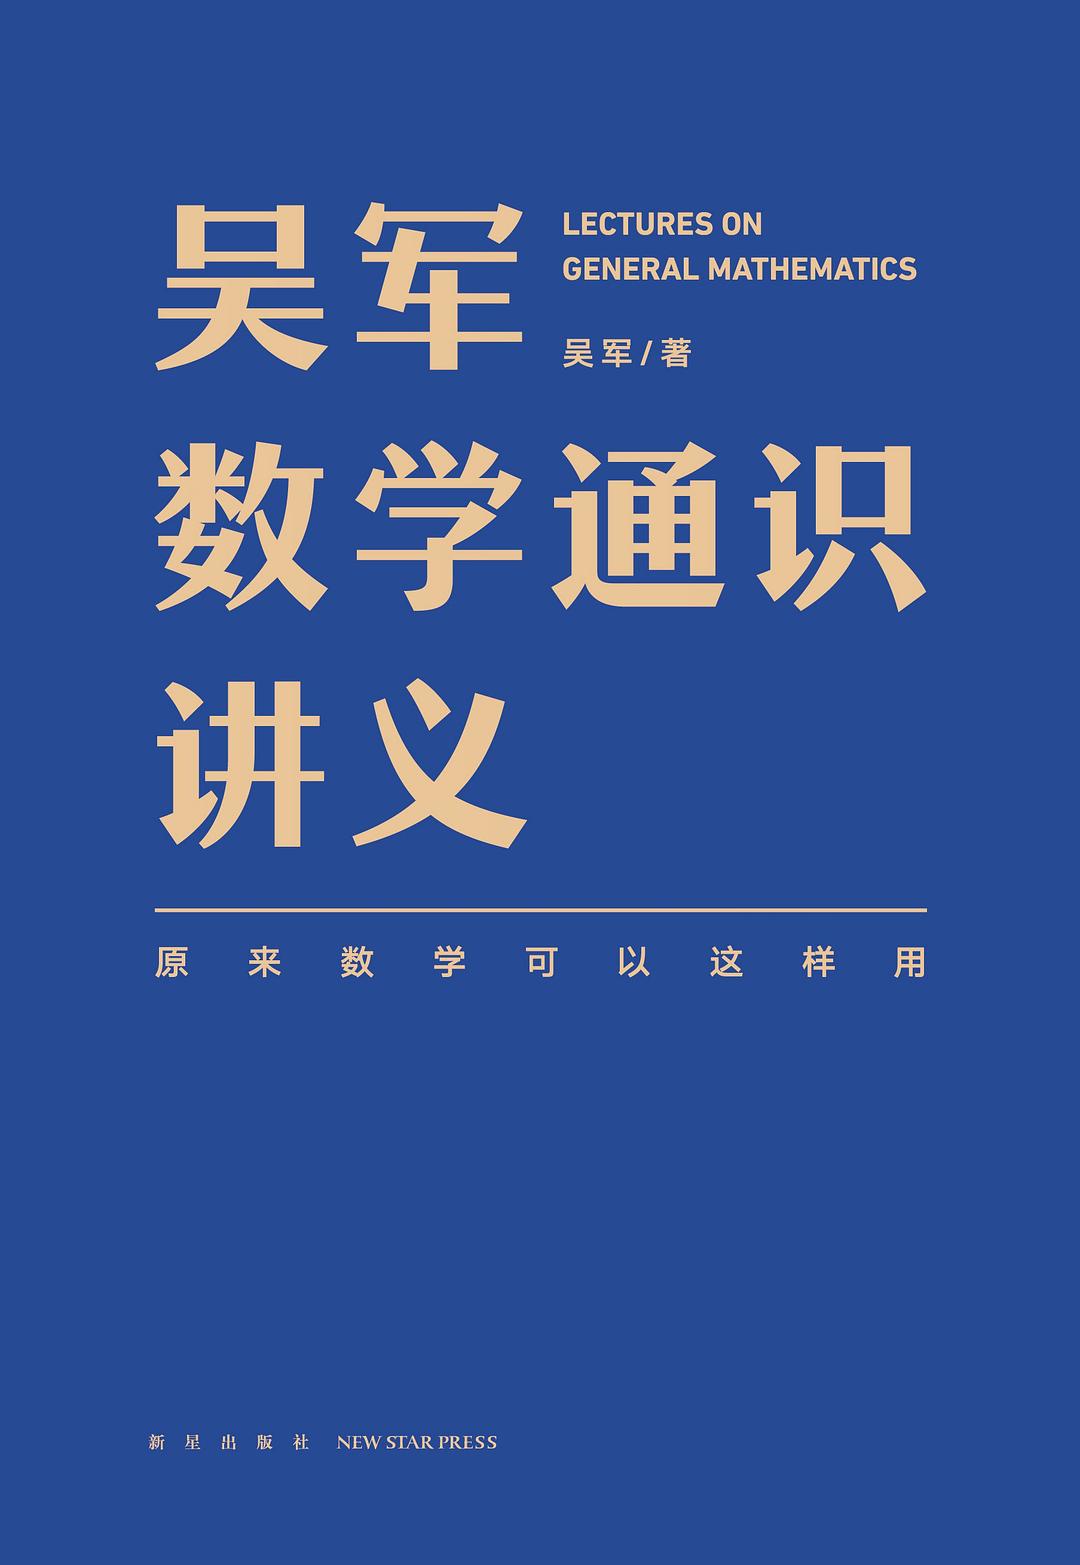 吴军数学通识讲义 (吴军) (pdf)